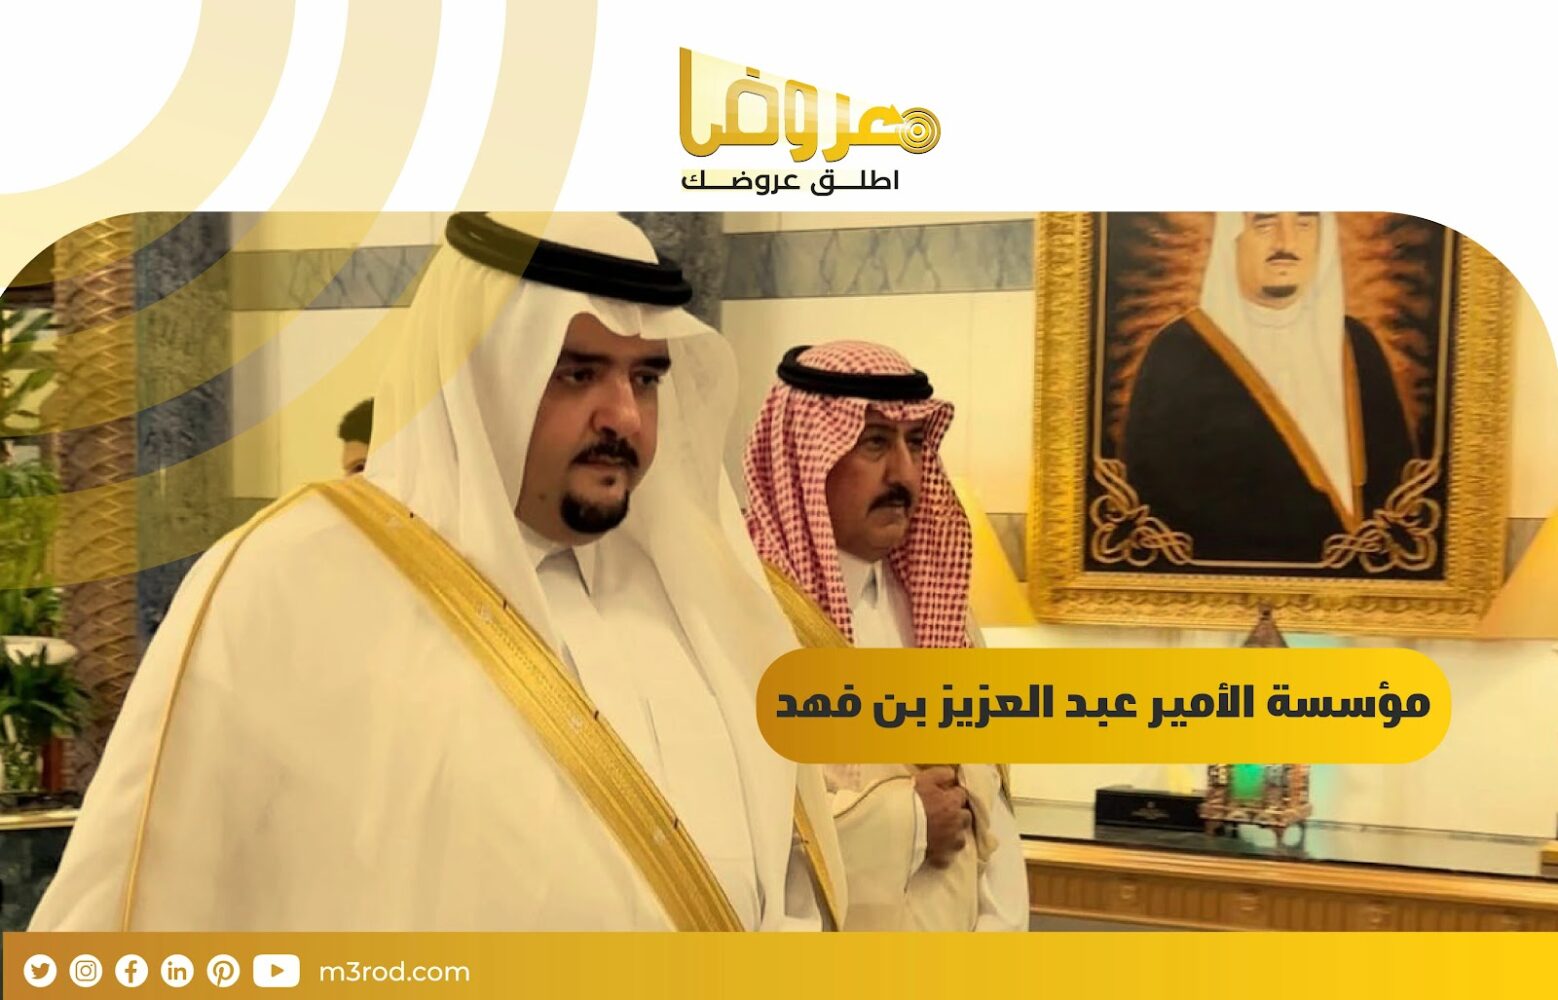 مؤسسة الأمير عبدالعزيز بن فهد